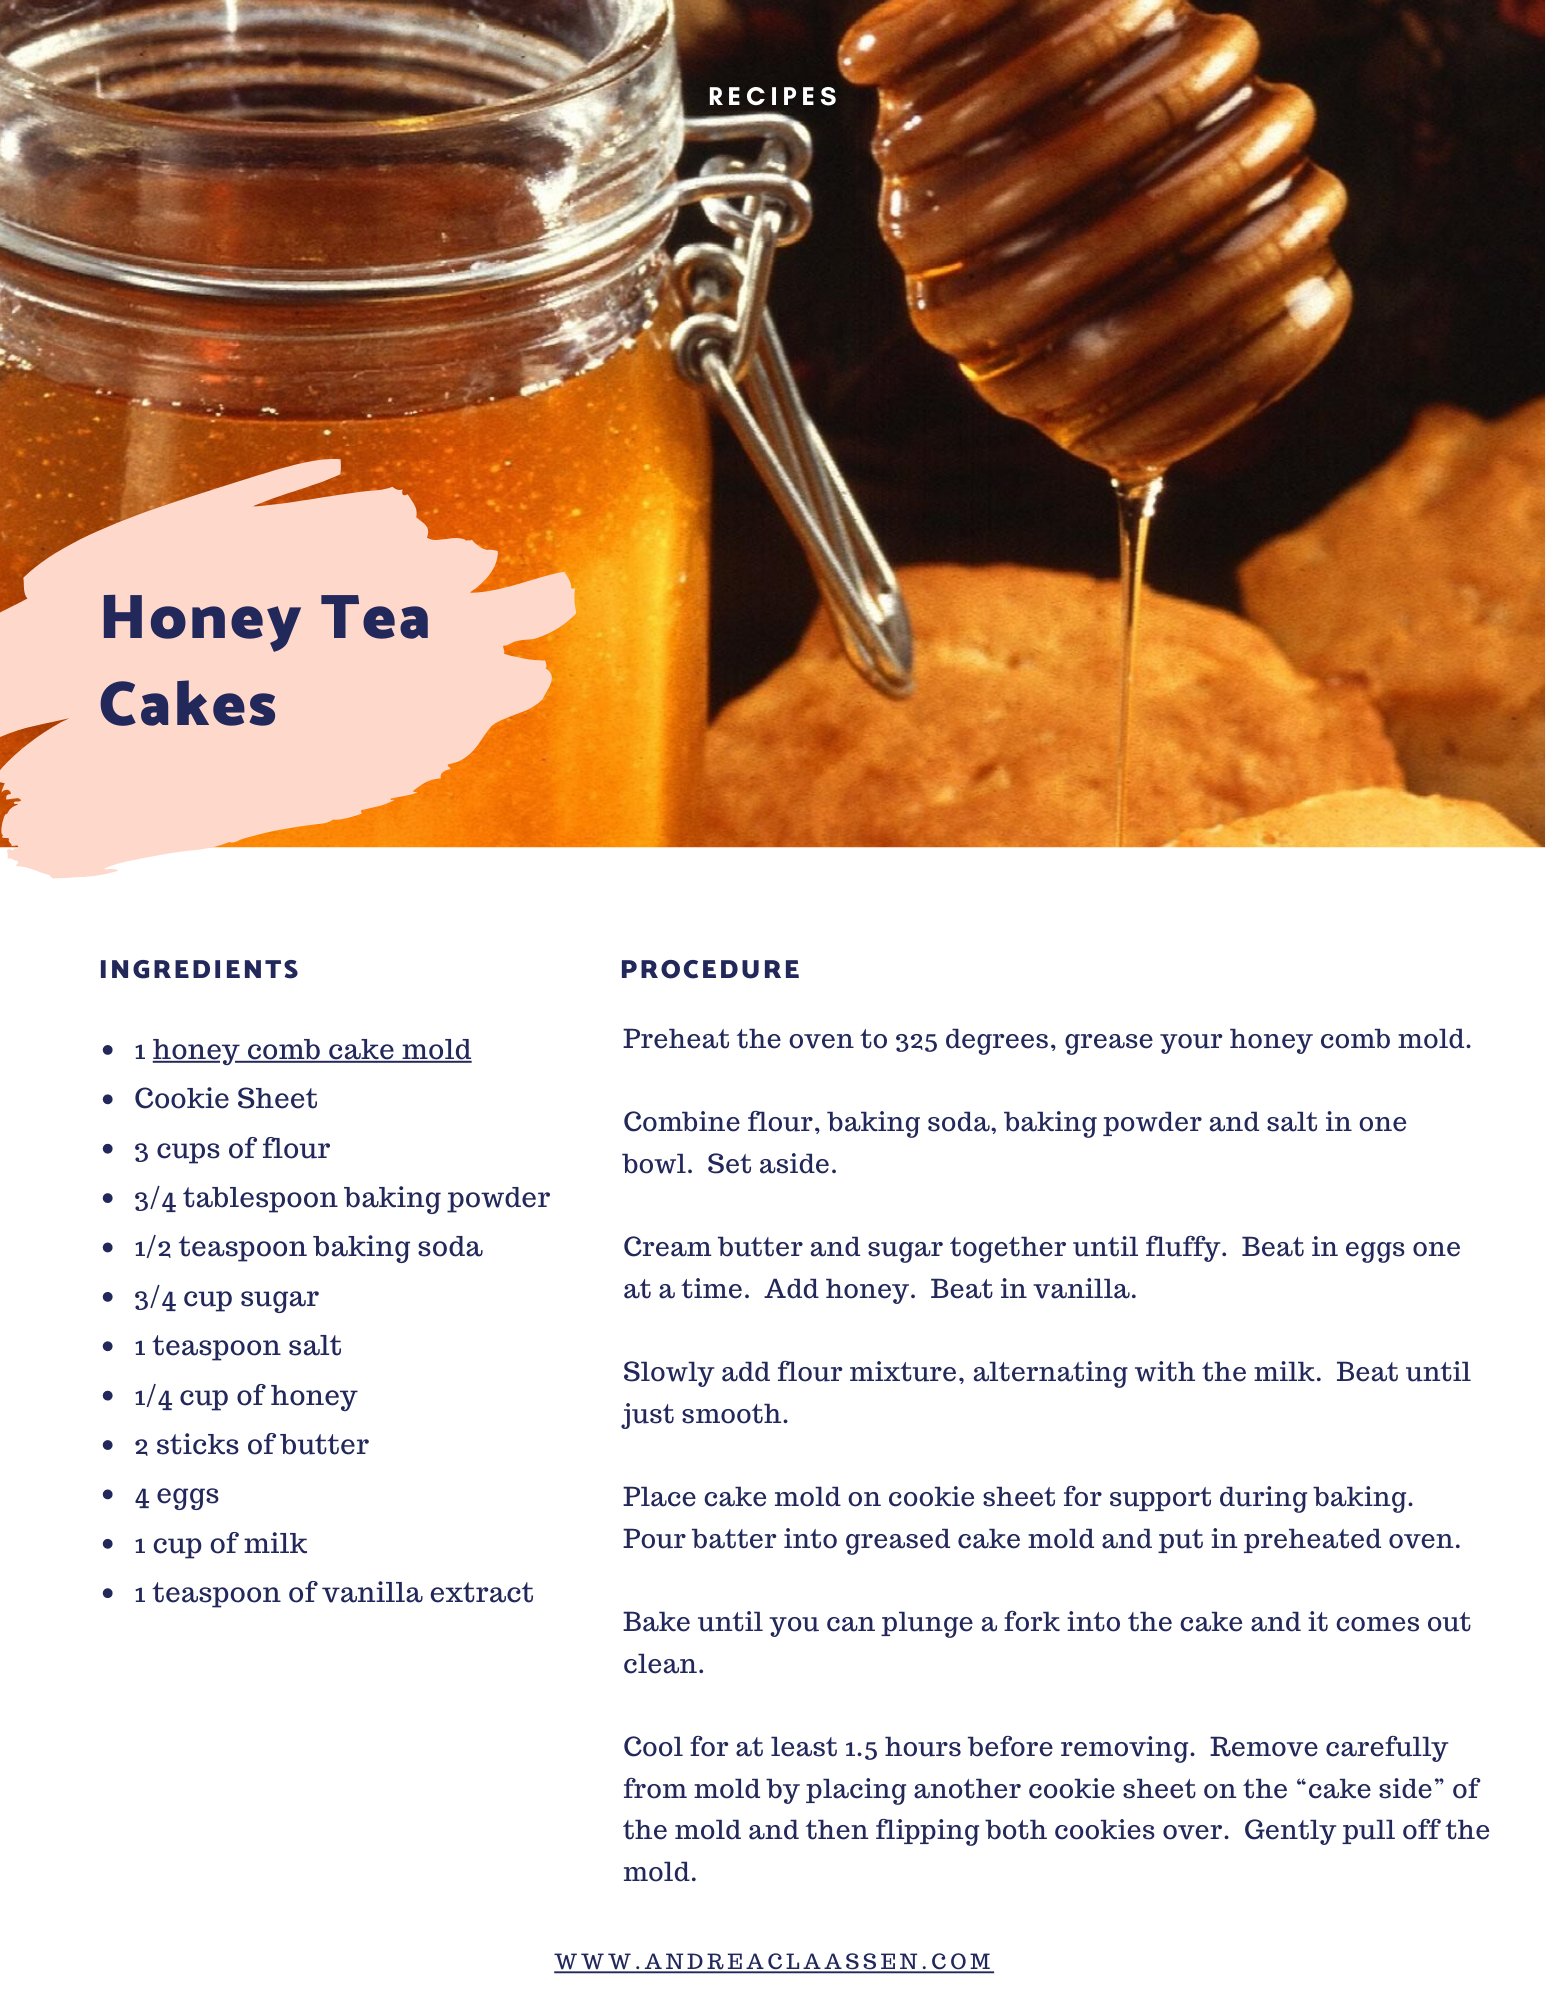 Honey Tea Cakeswebsite